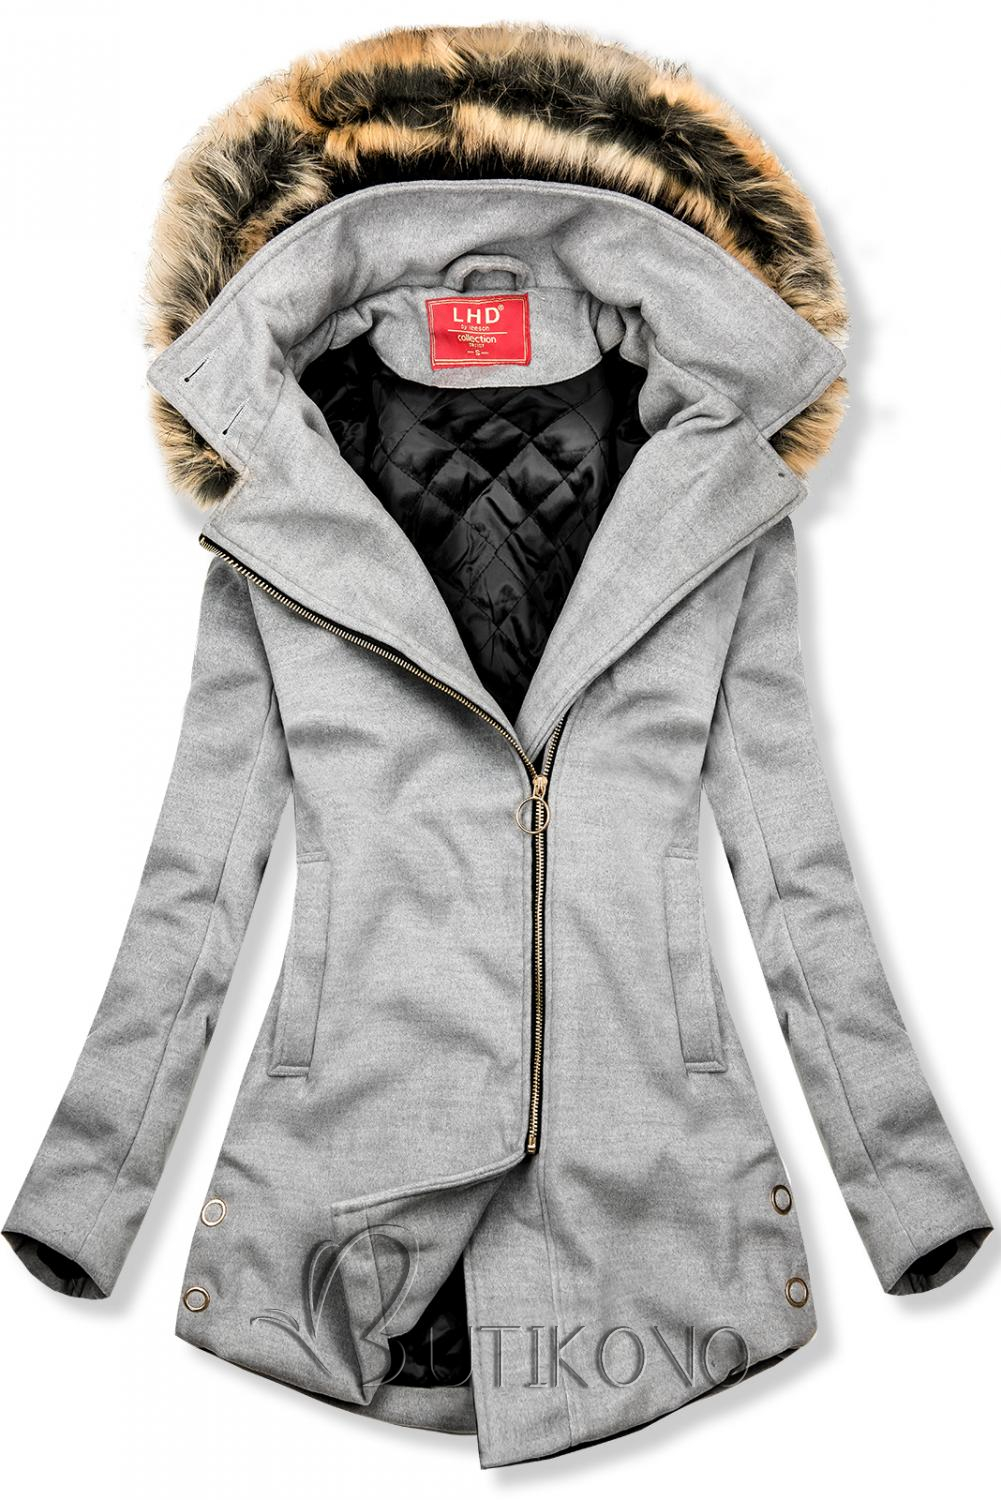 Světle šedý kabát na období podzim/zima